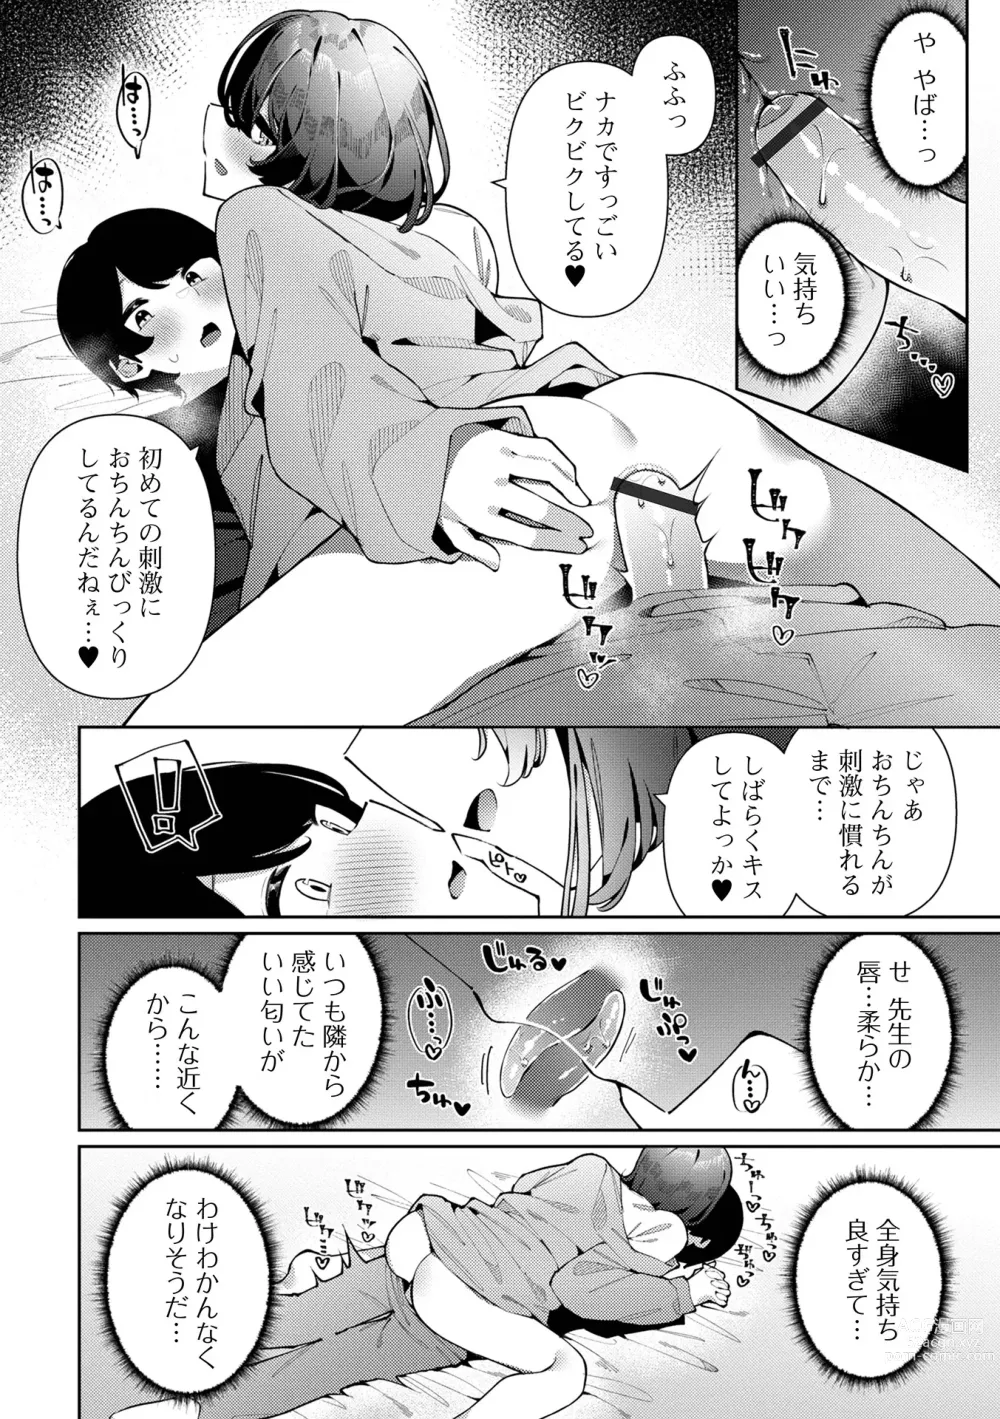 Page 12 of manga Gekkan Web Otoko no Ko-llection! S Vol. 90